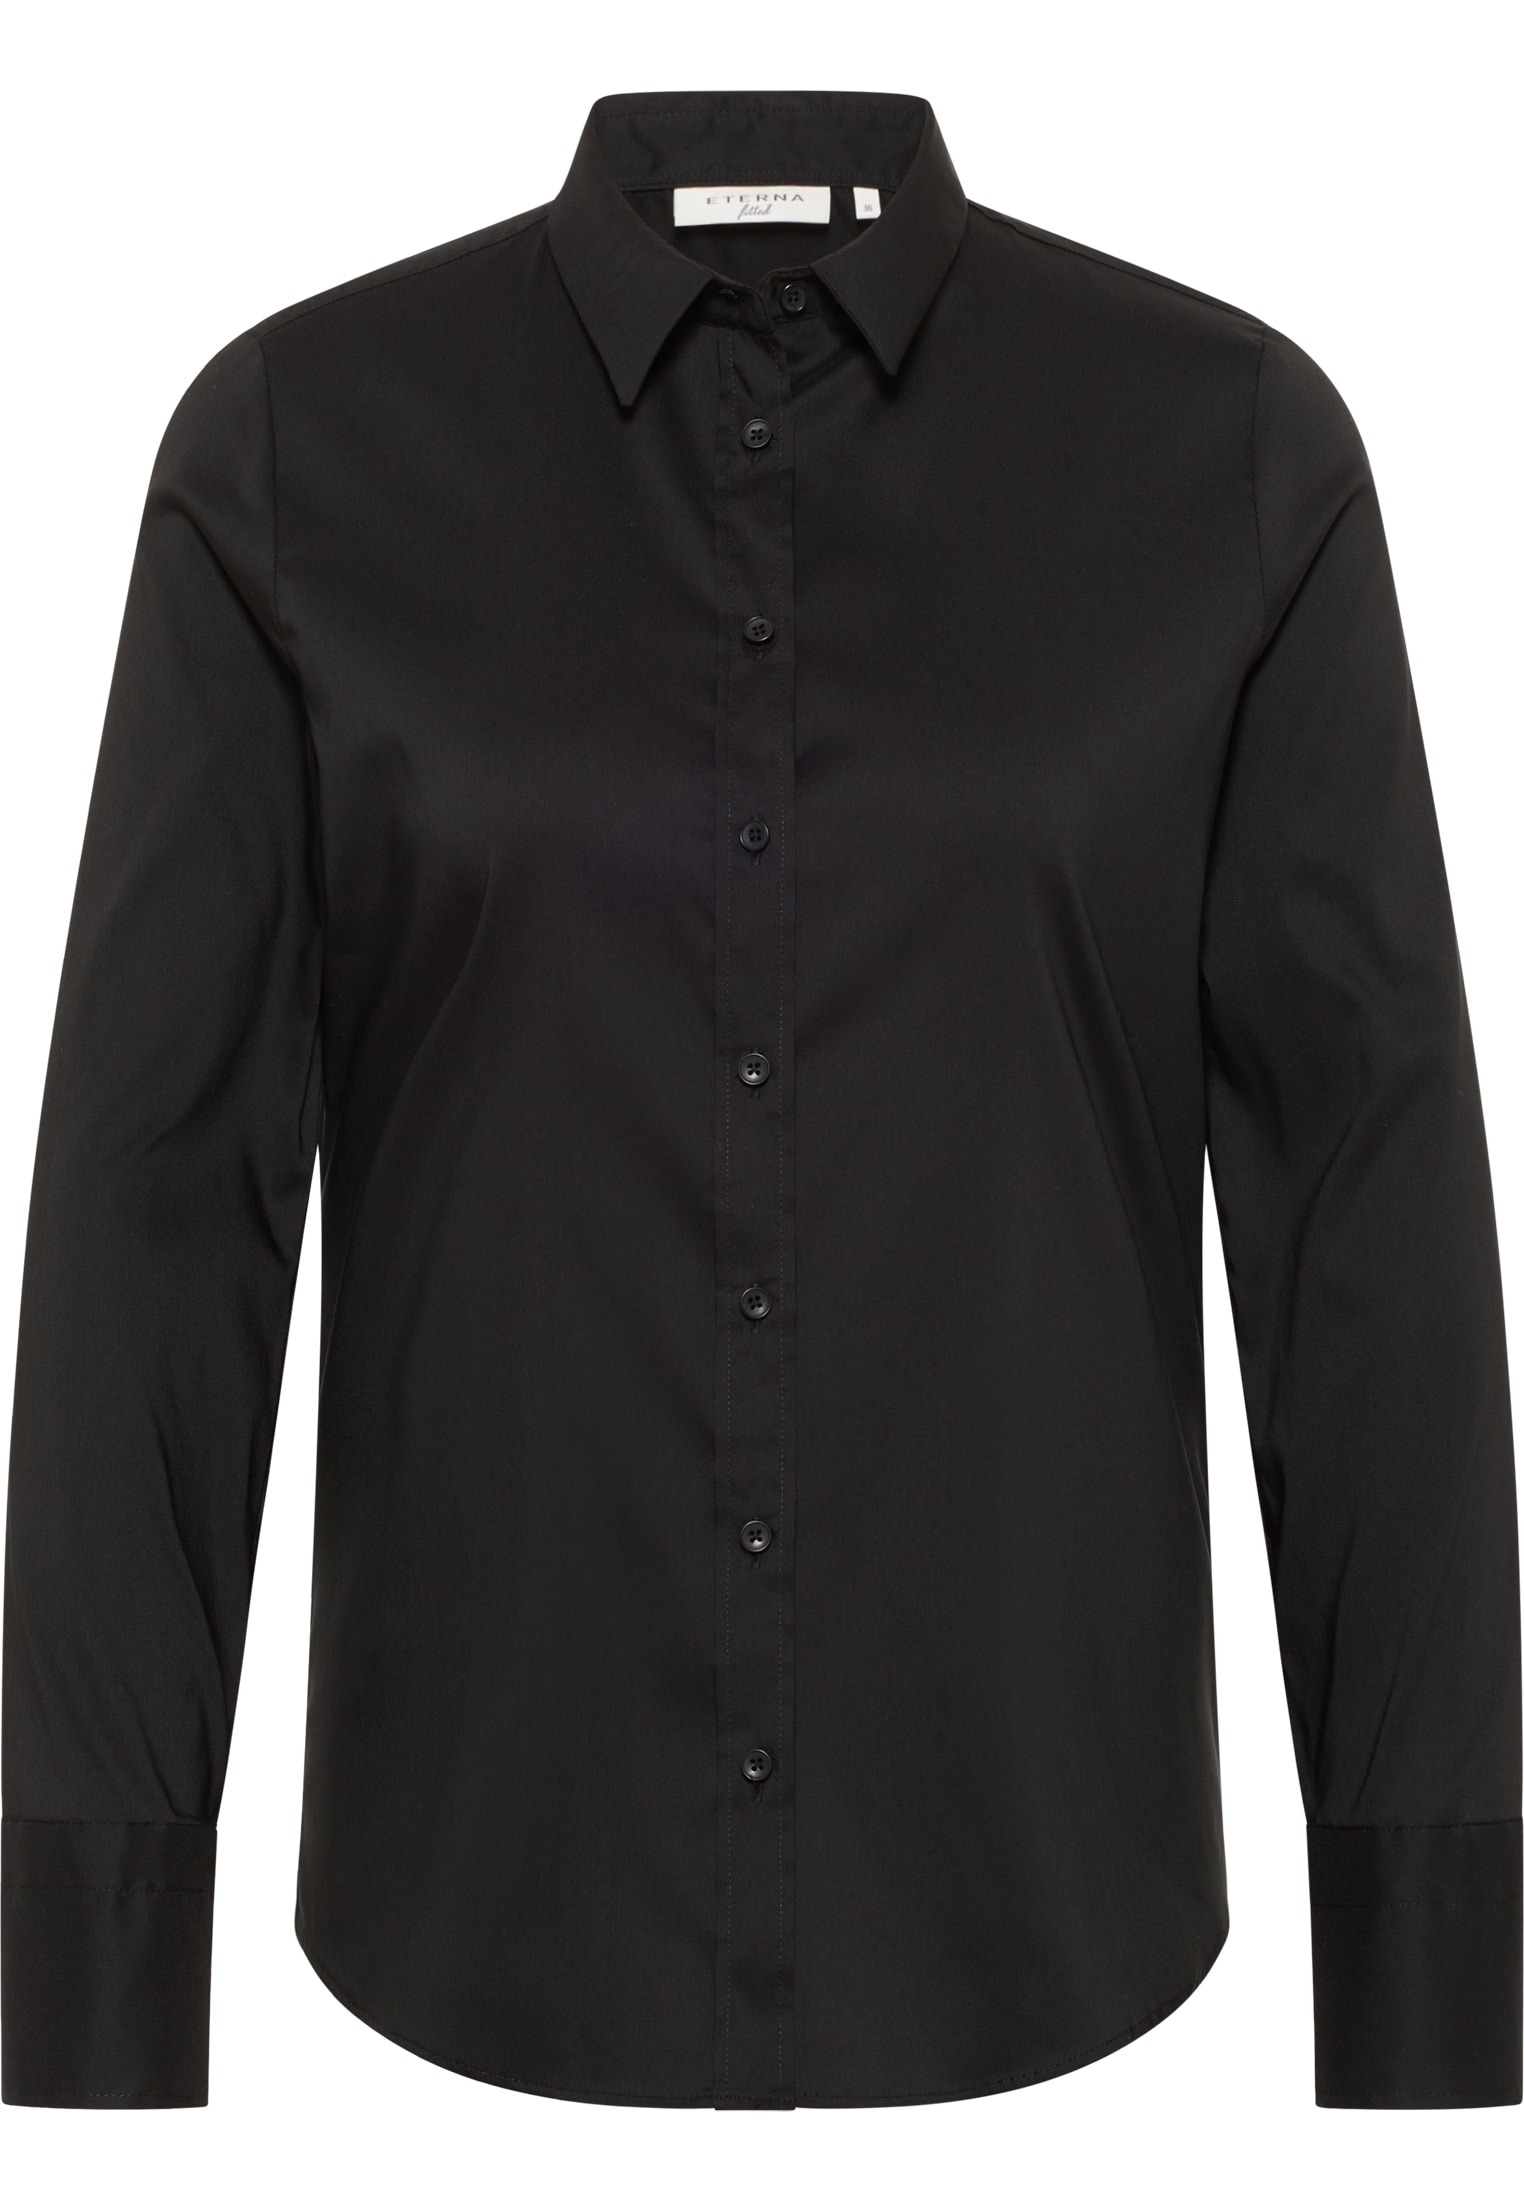 Performance Shirt Bluse in schwarz unifarben | schwarz | Langarm | 40 |  2BL00441-03-91-40-1/1